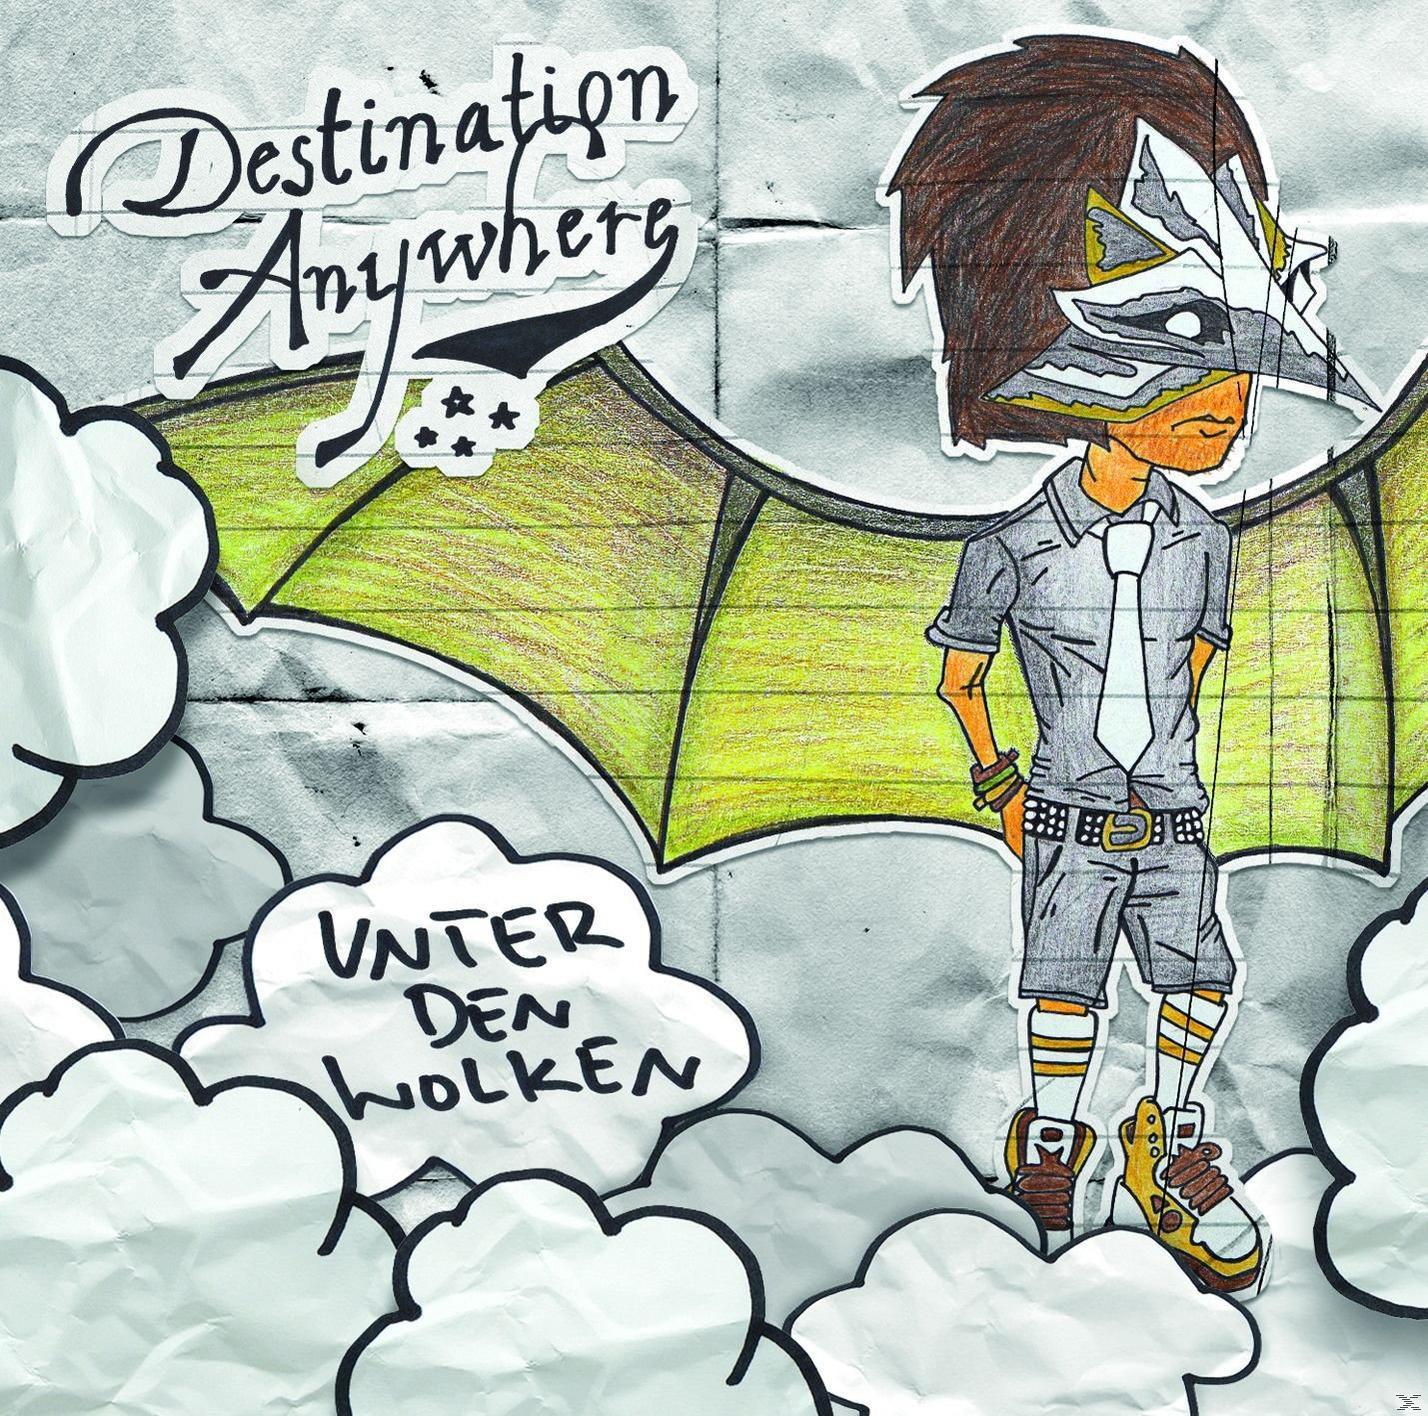 Destination Anywhere - (CD) Den Wolken Unter 